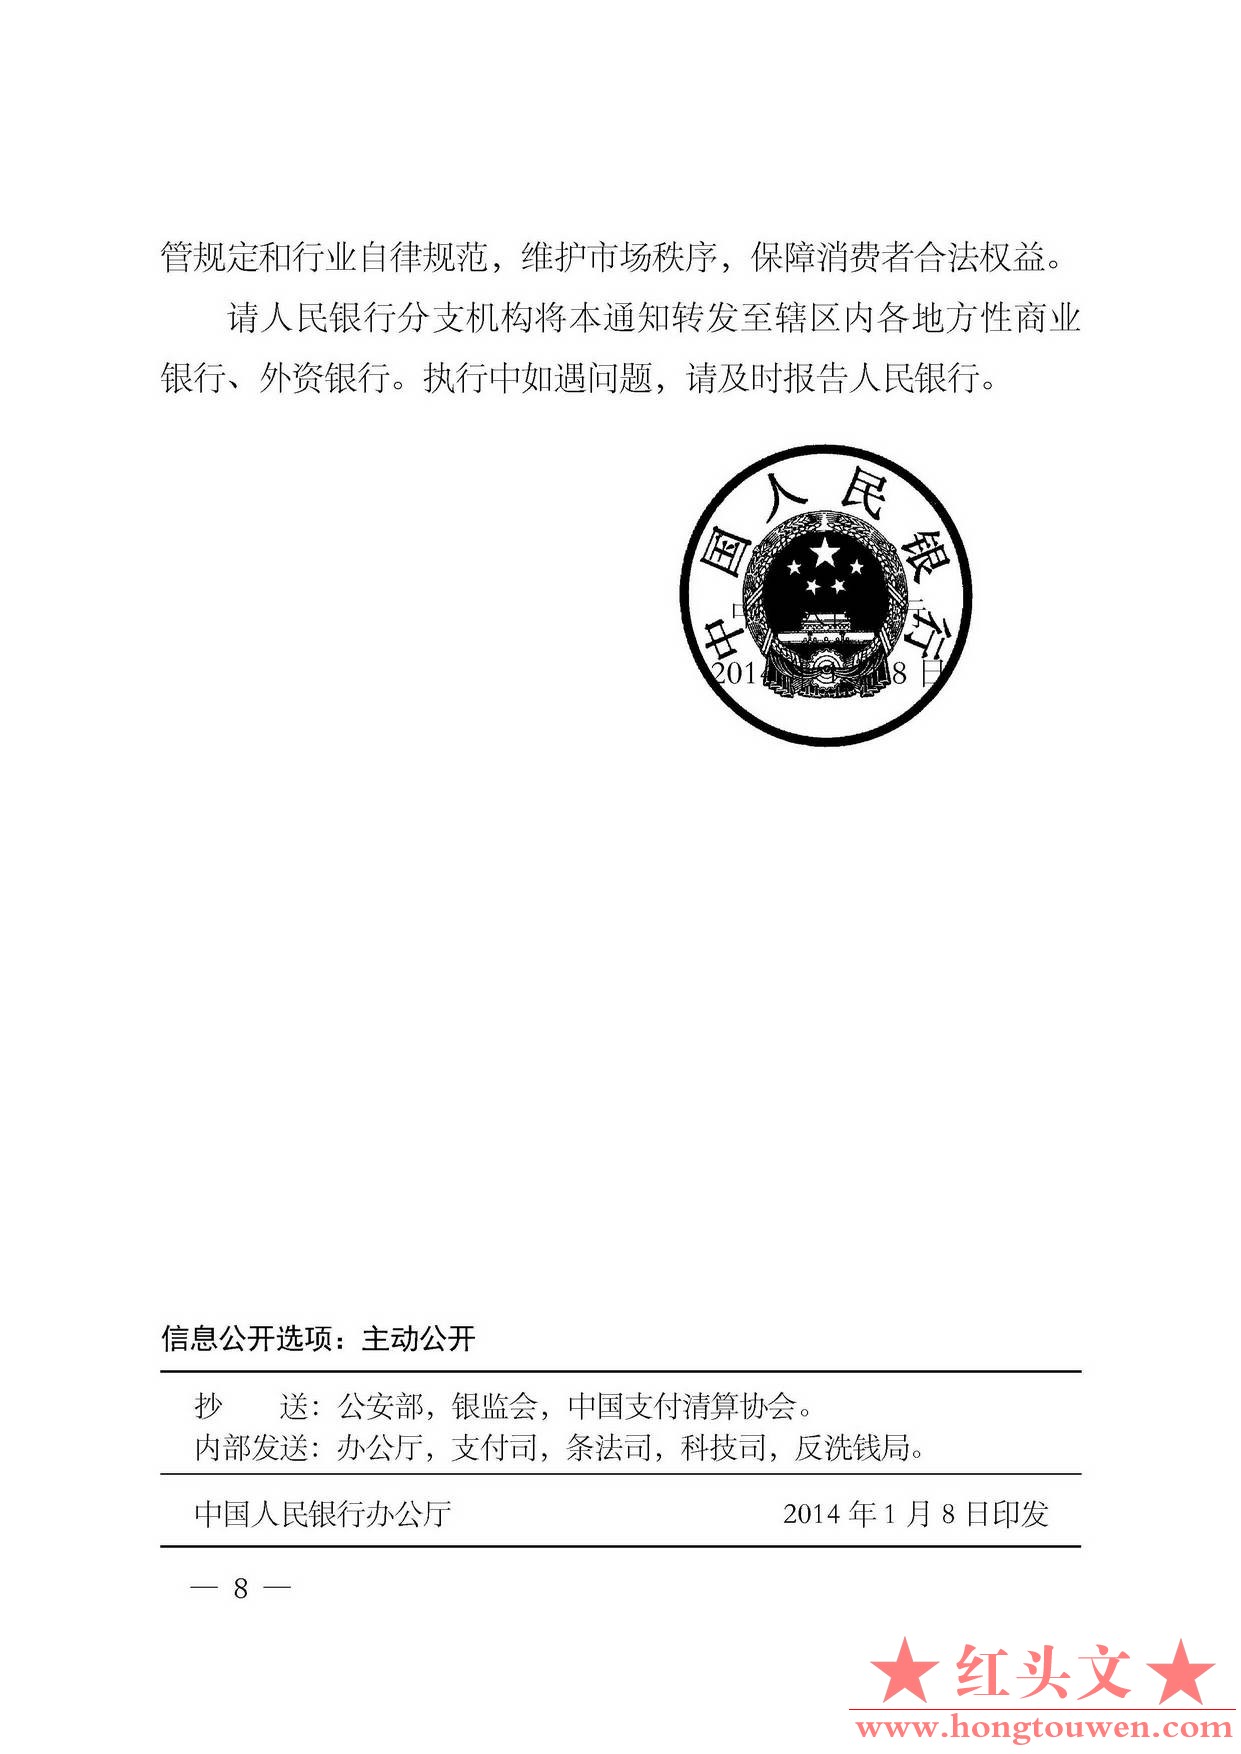 银发[2014]5号-中国人民银行关于加强银行卡业务管理的通知_页面_8.jpg